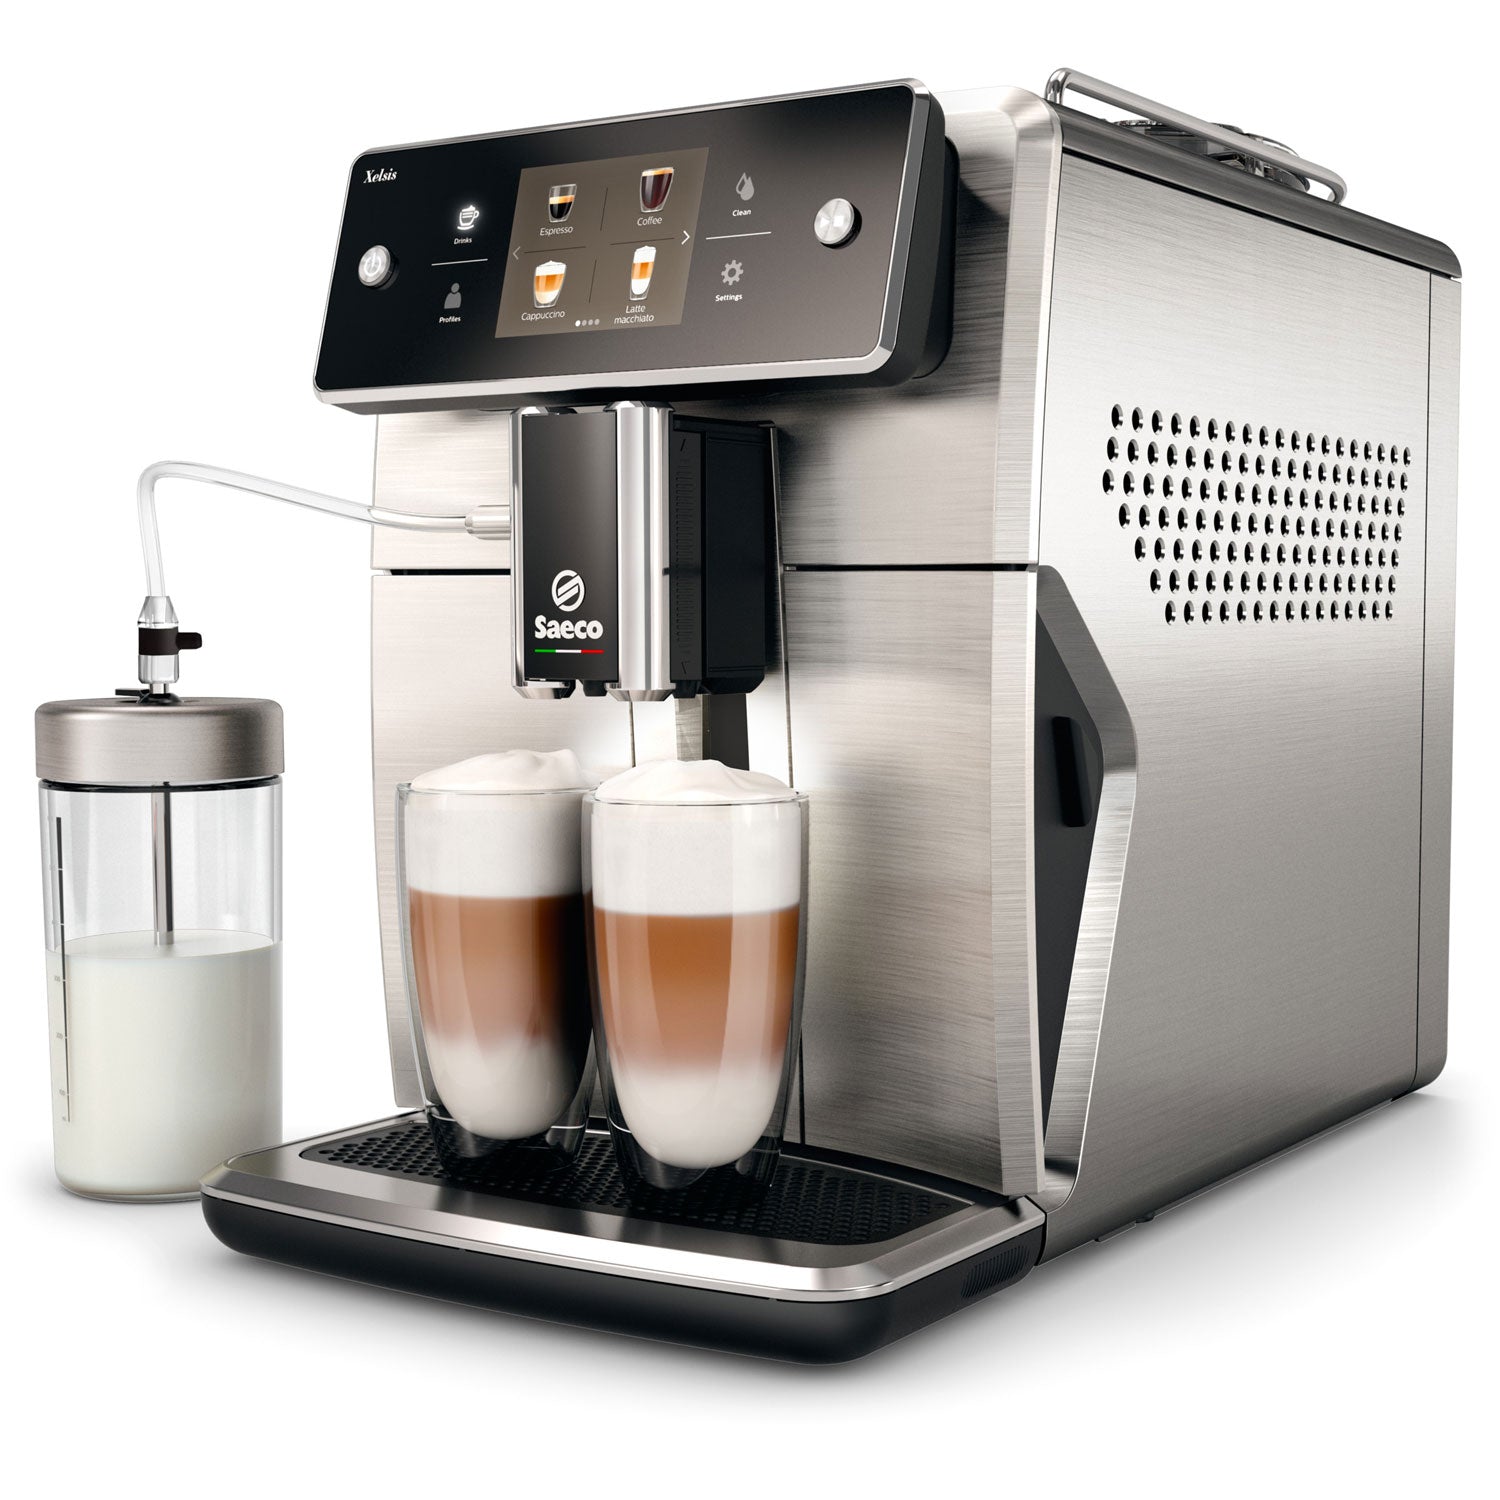 saeco espresso machine automatic